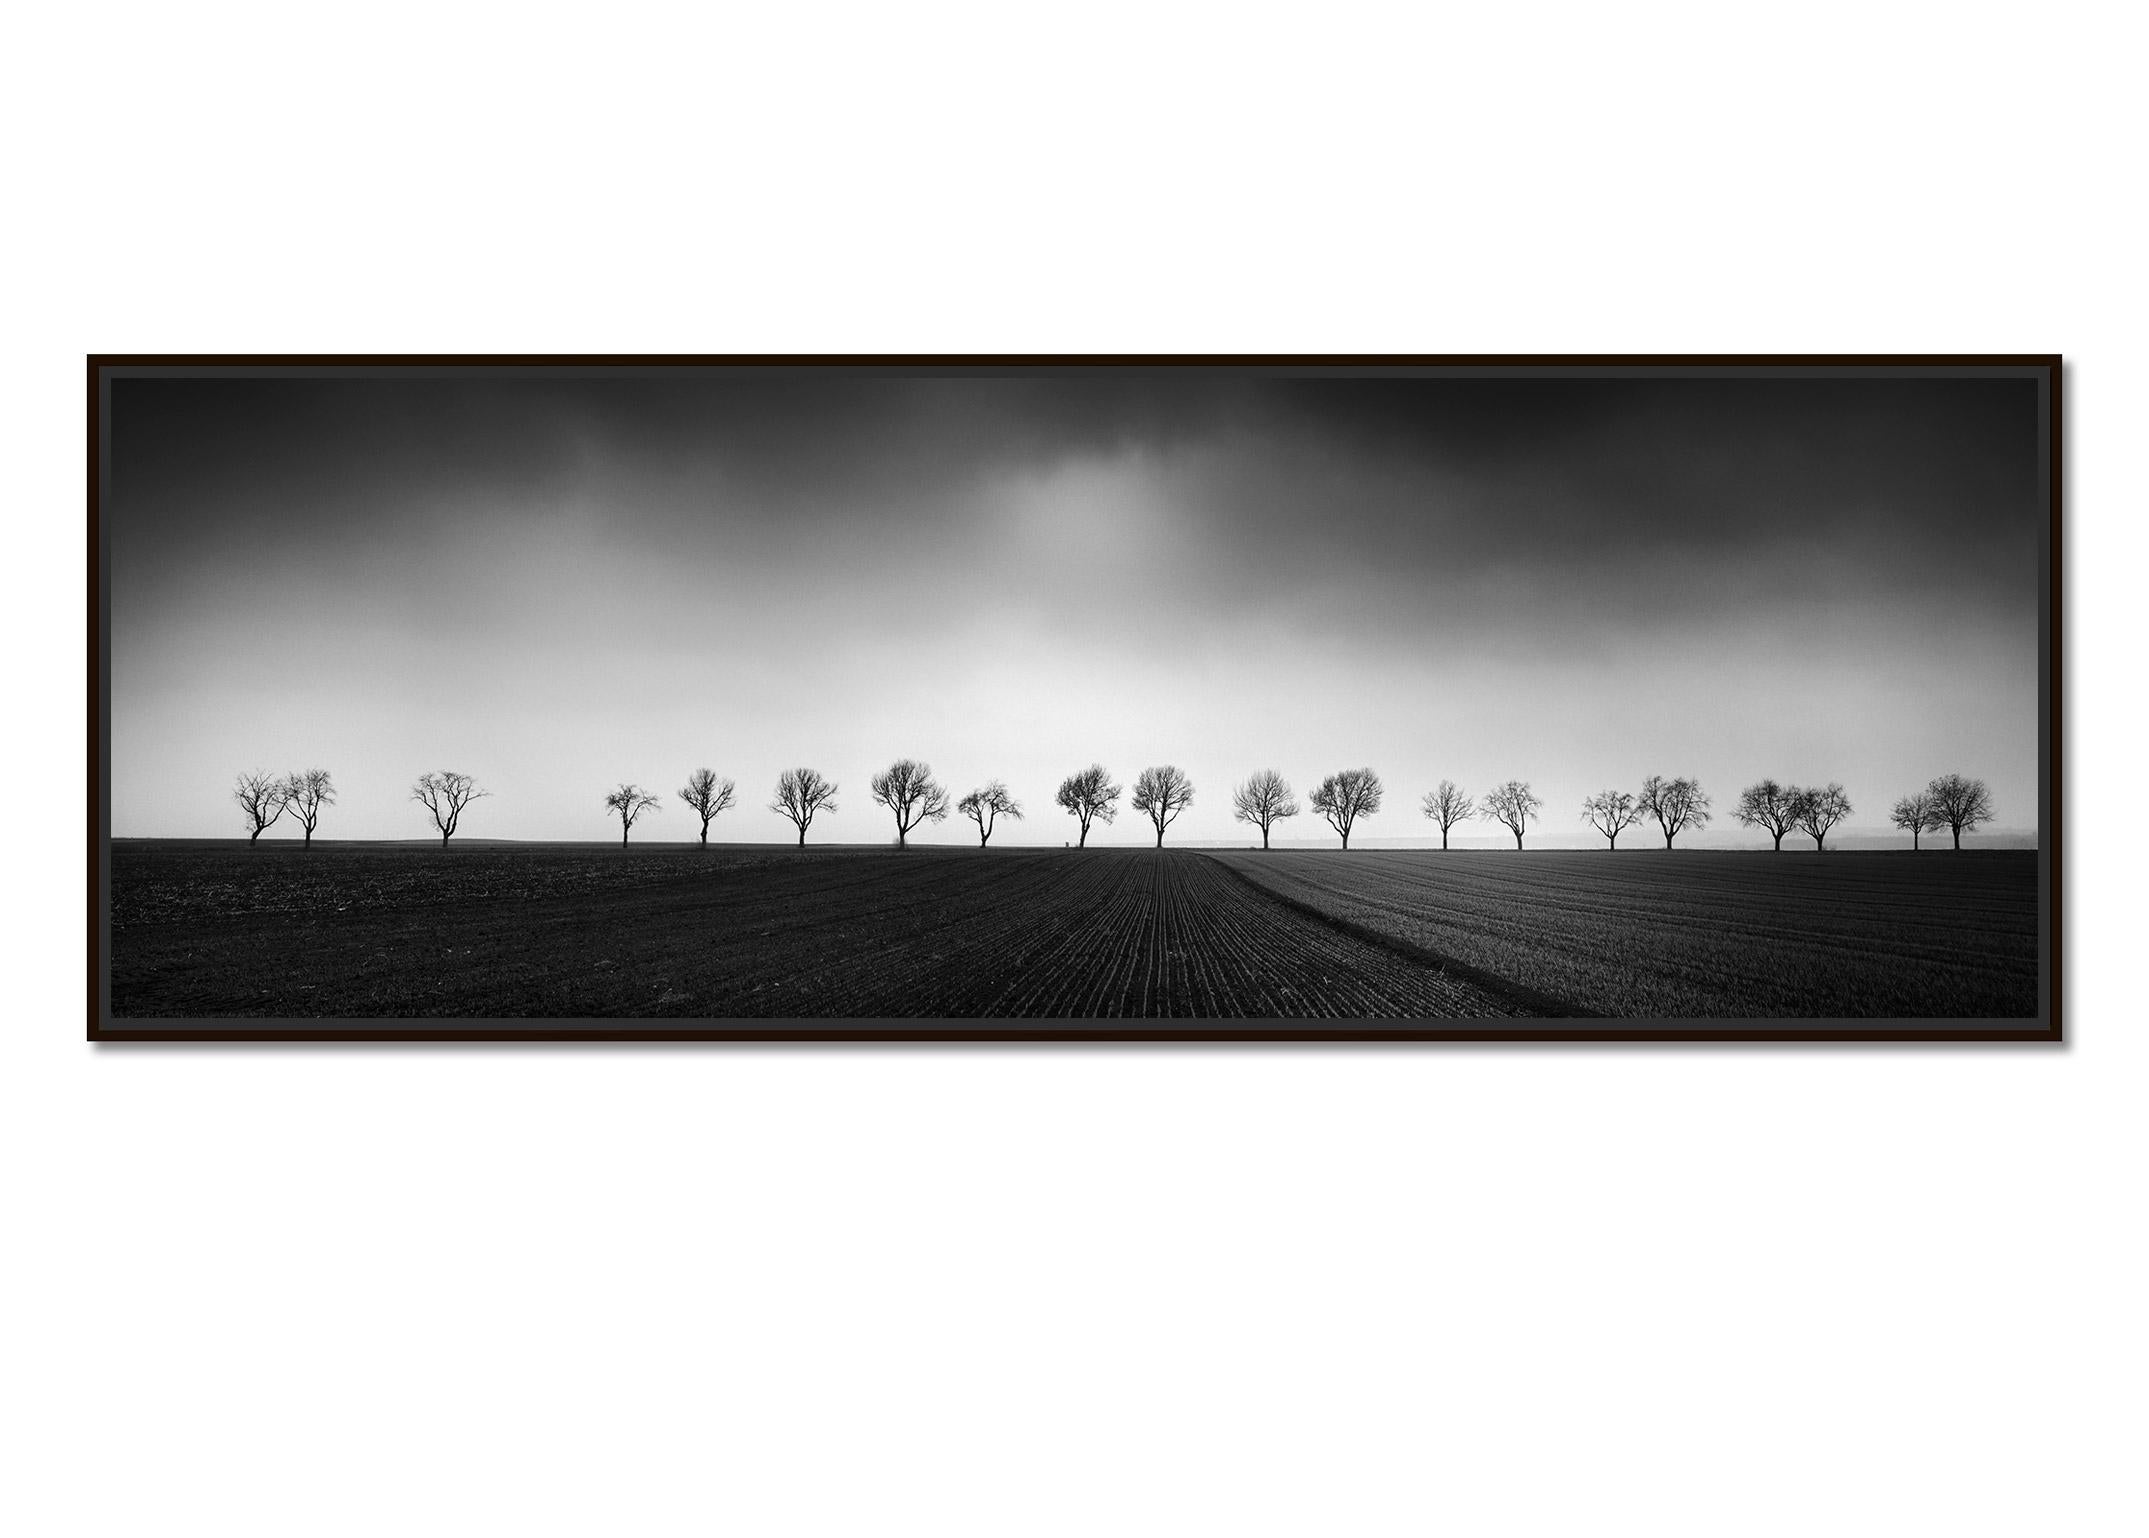 Zwanzig Kirschbaumbäume Avenue cornfield Schwarz-Schwarz-Weiß- Panoramen-Landschaftsfotografie – Photograph von Gerald Berghammer